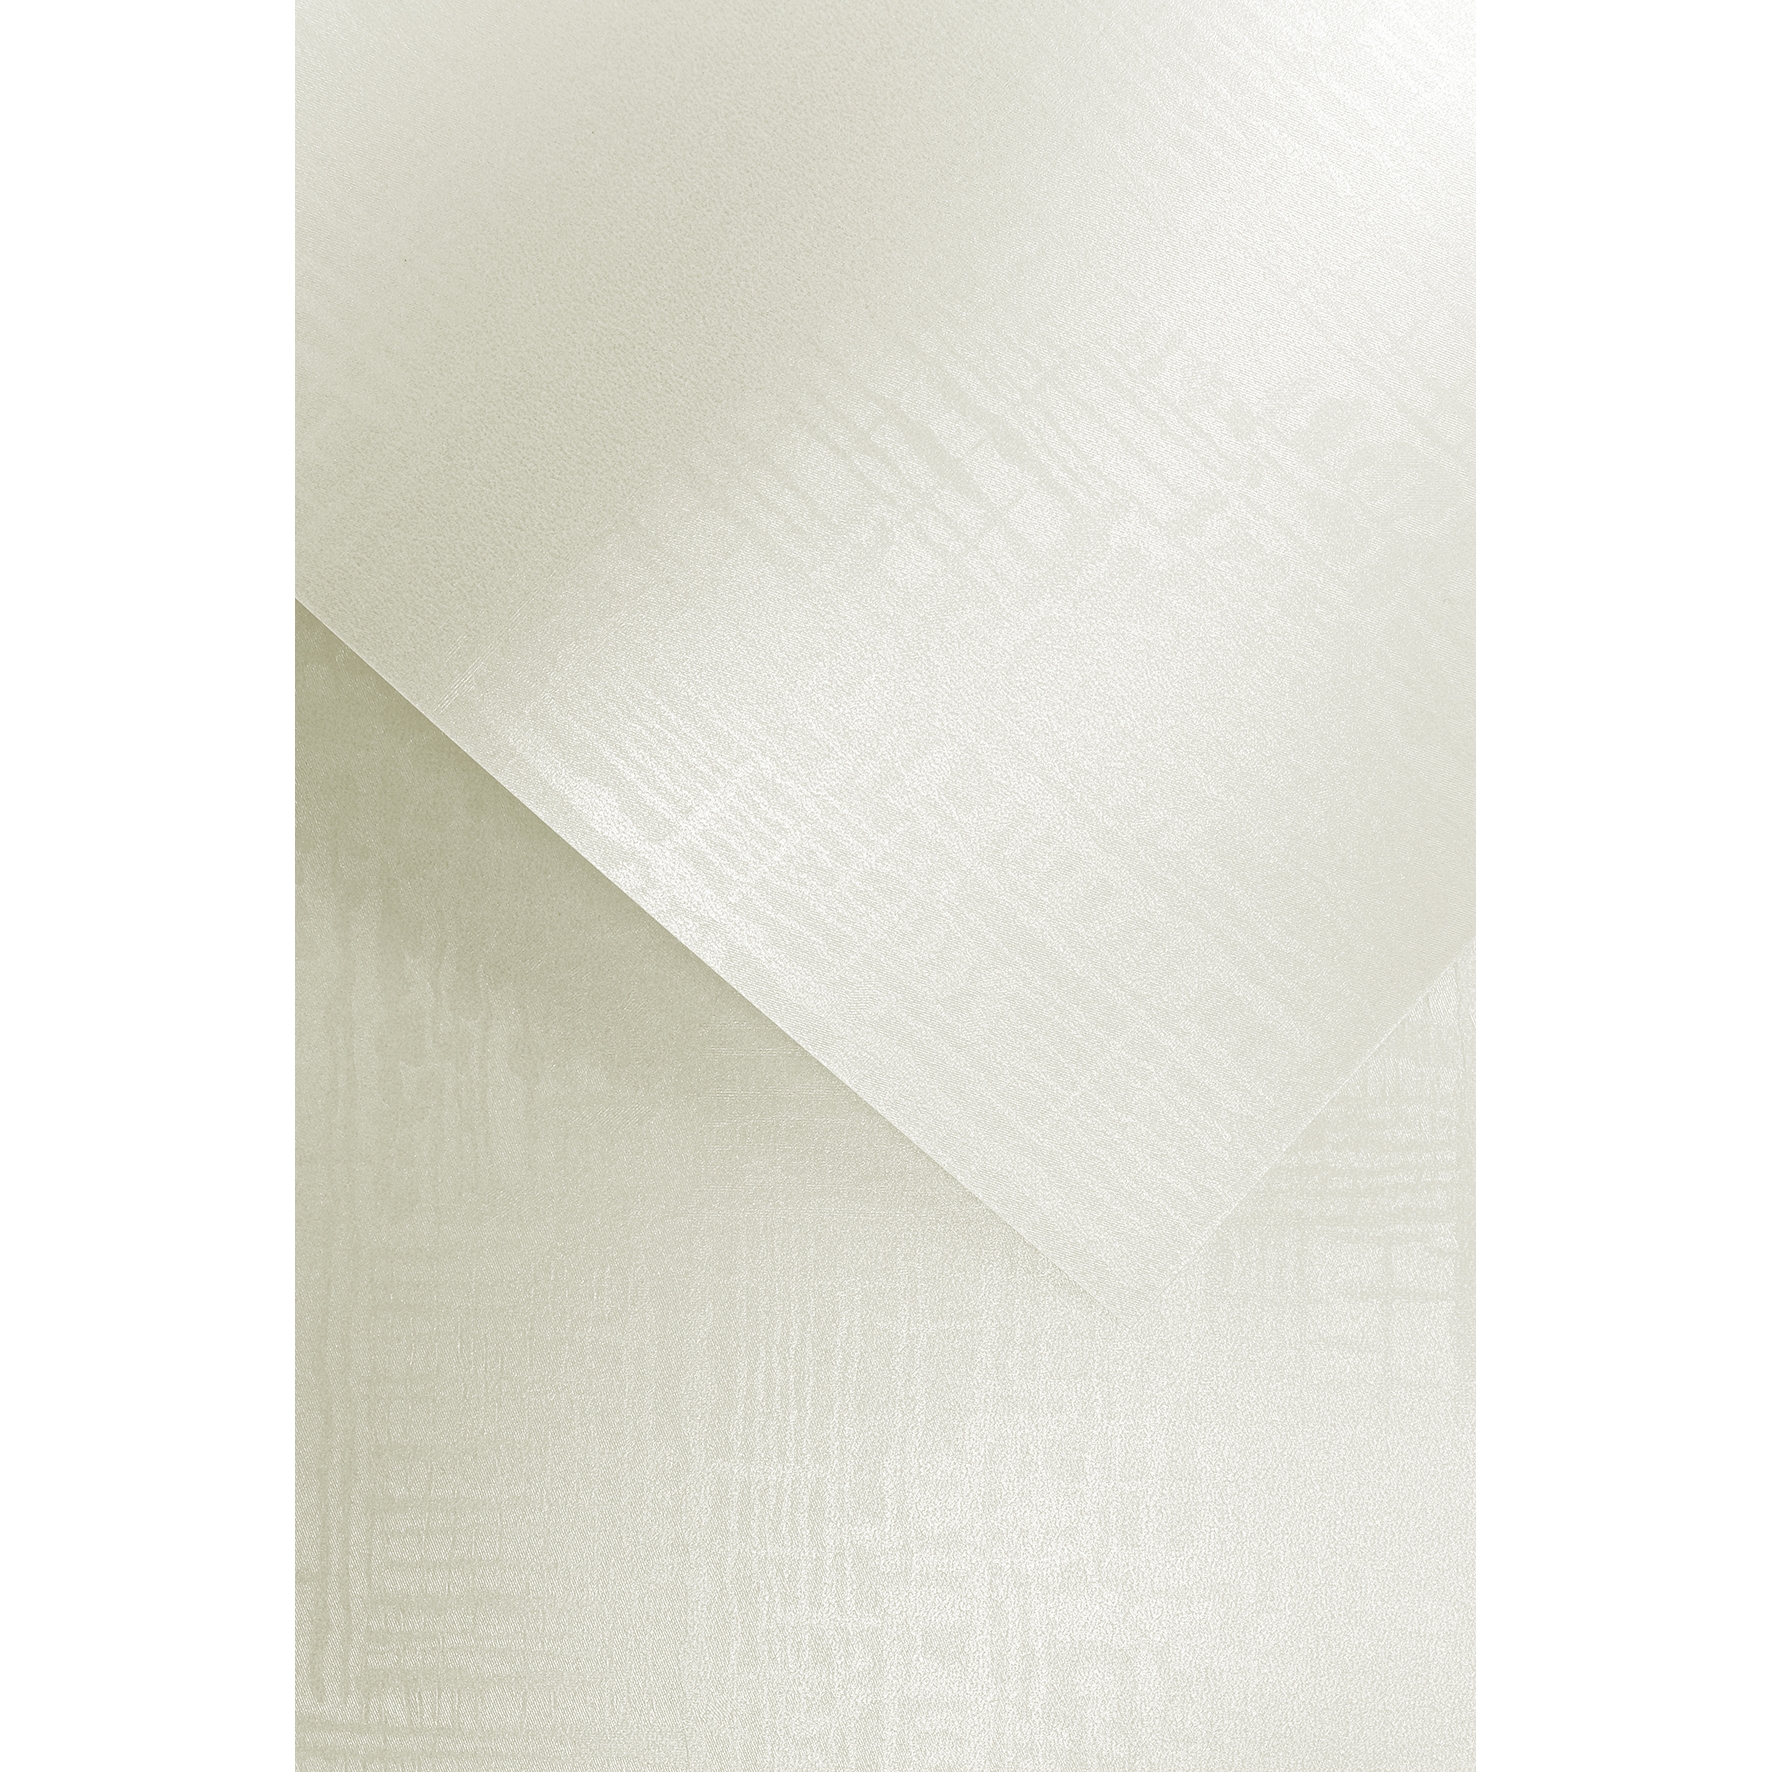 Ozdobný papír Satina, bílý, 220g, 20ks